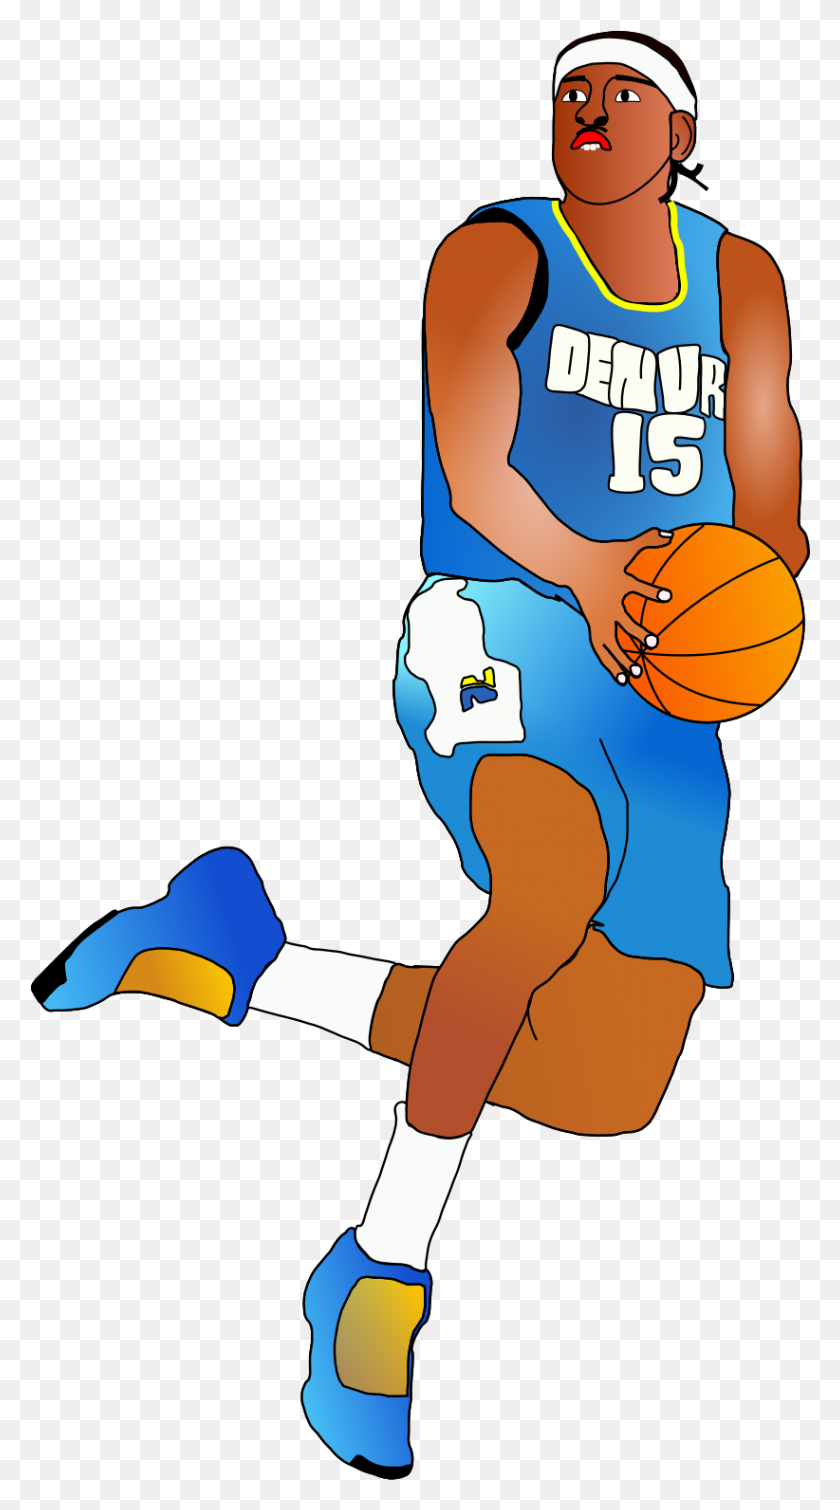 822x1529 Imágenes De Dibujos Animados De Jugadores De Baloncesto Image Group - Stephen Curry Clipart